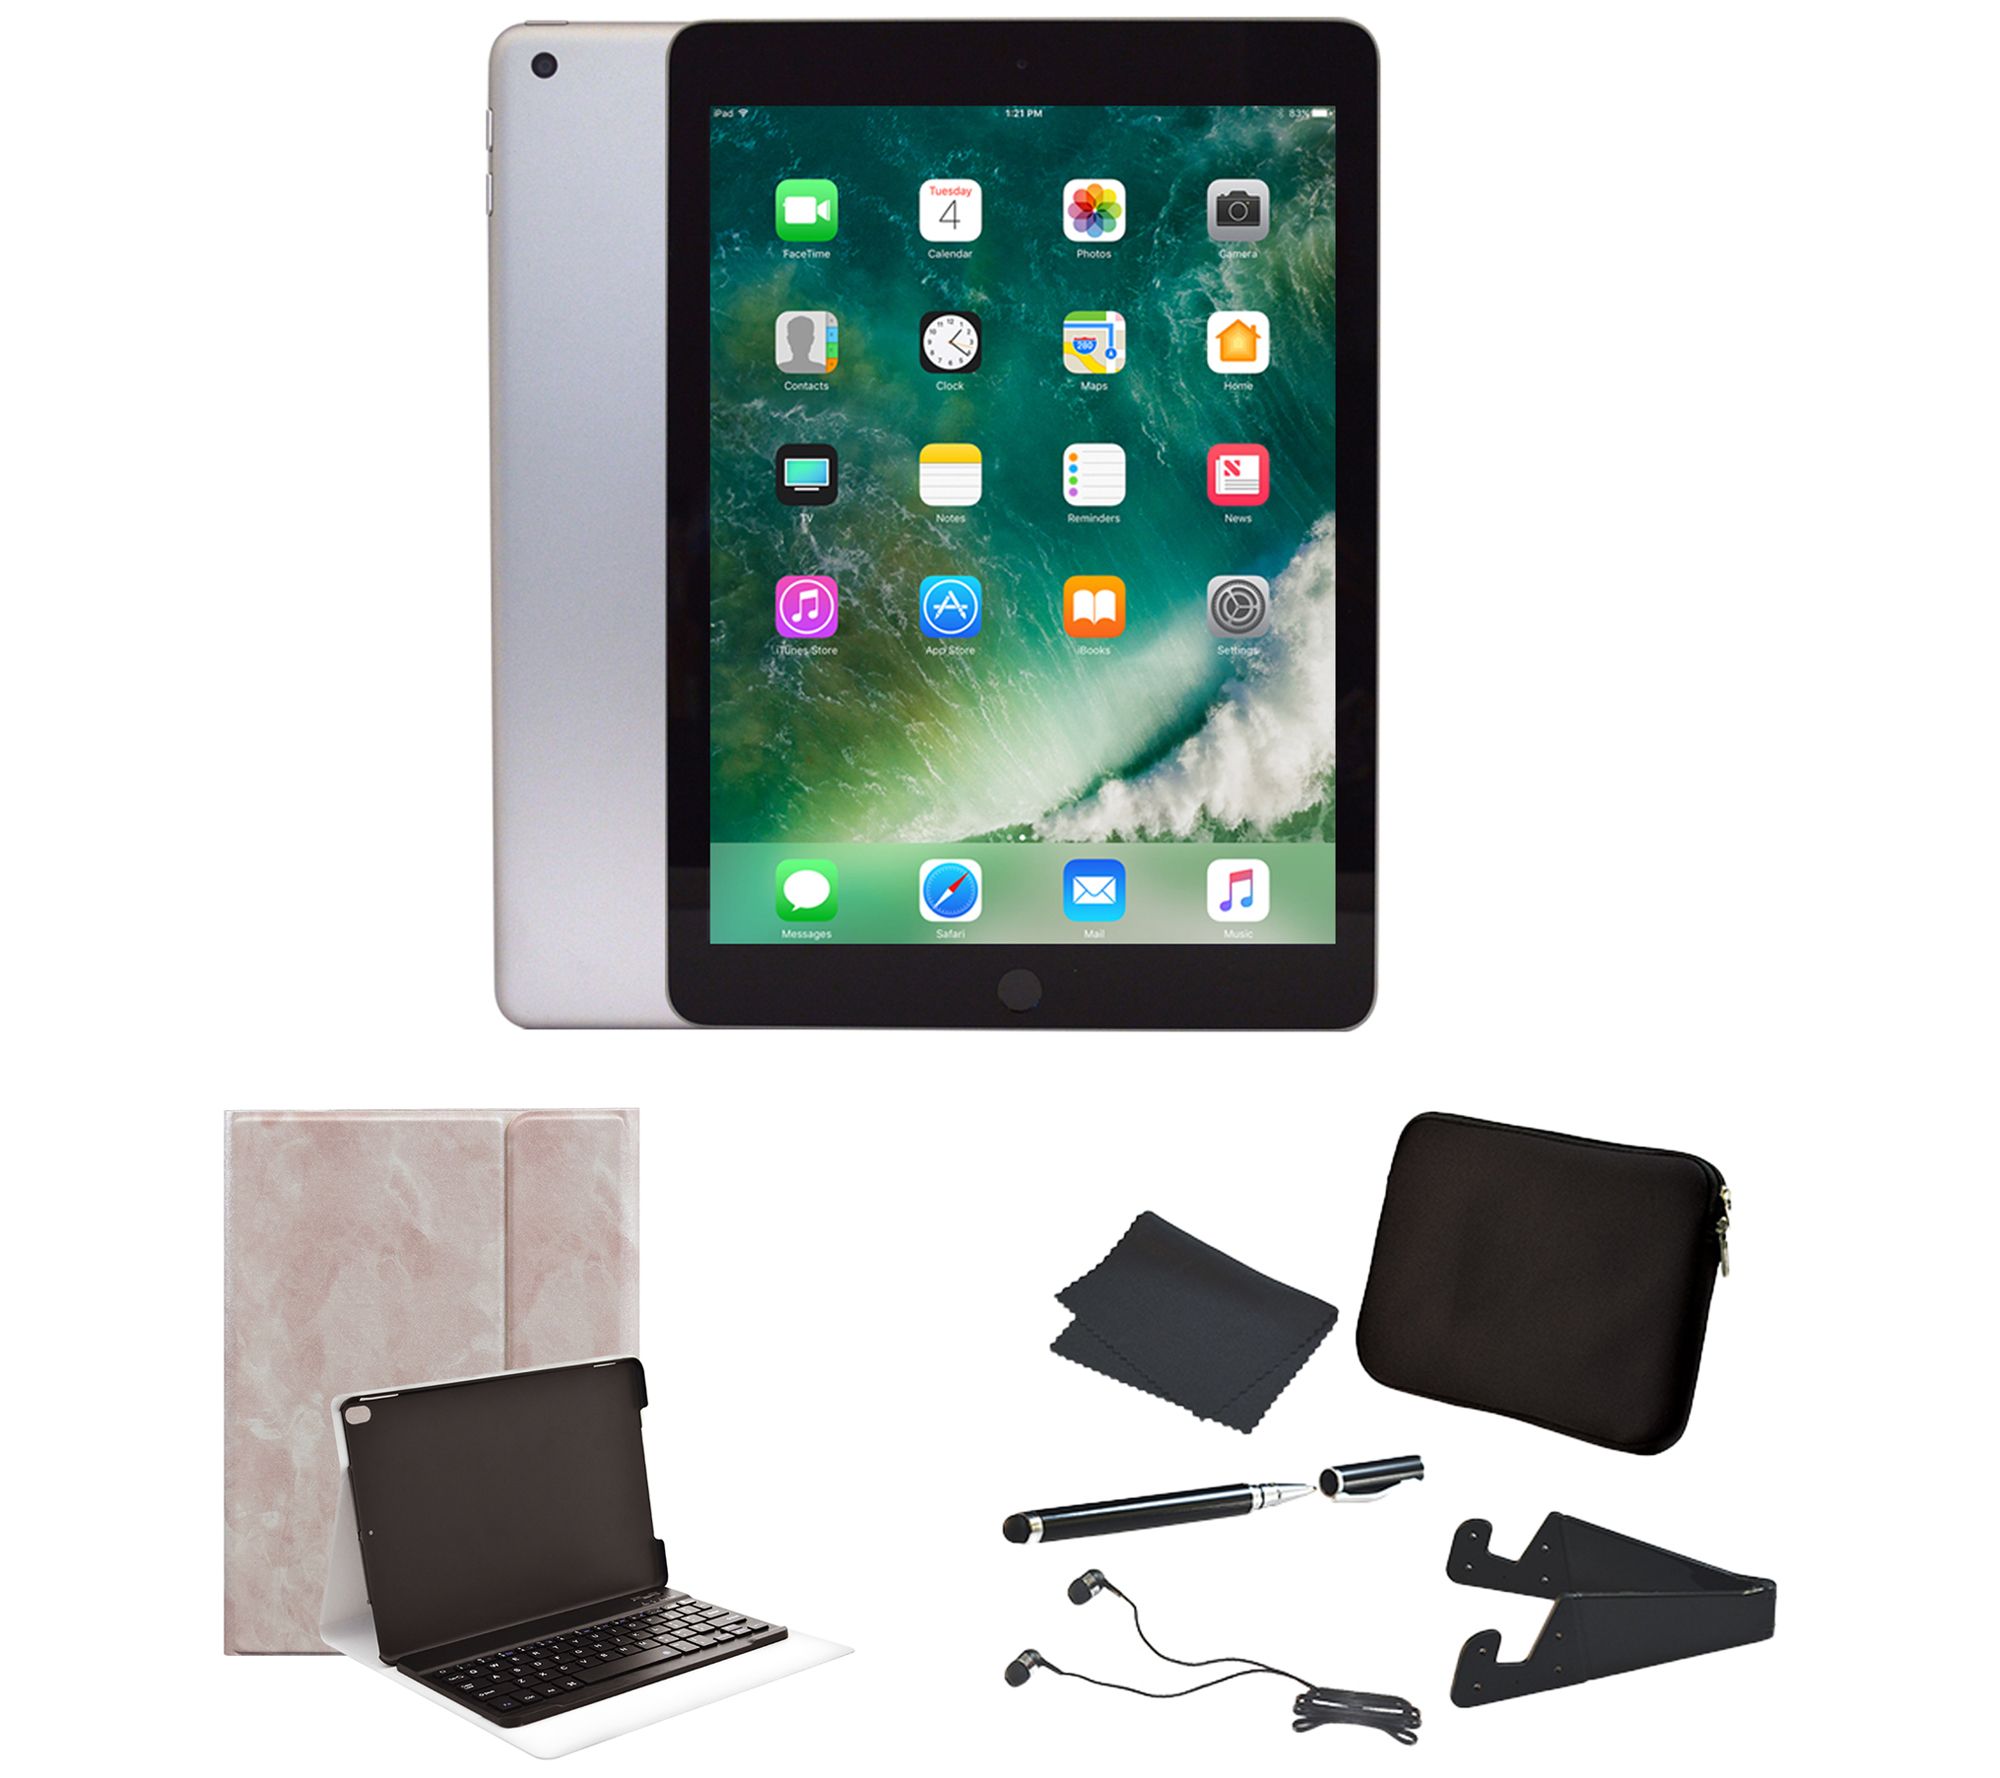 Apple iPad 9.7" 32GB Wi-Fi with Accessories - QVC.com